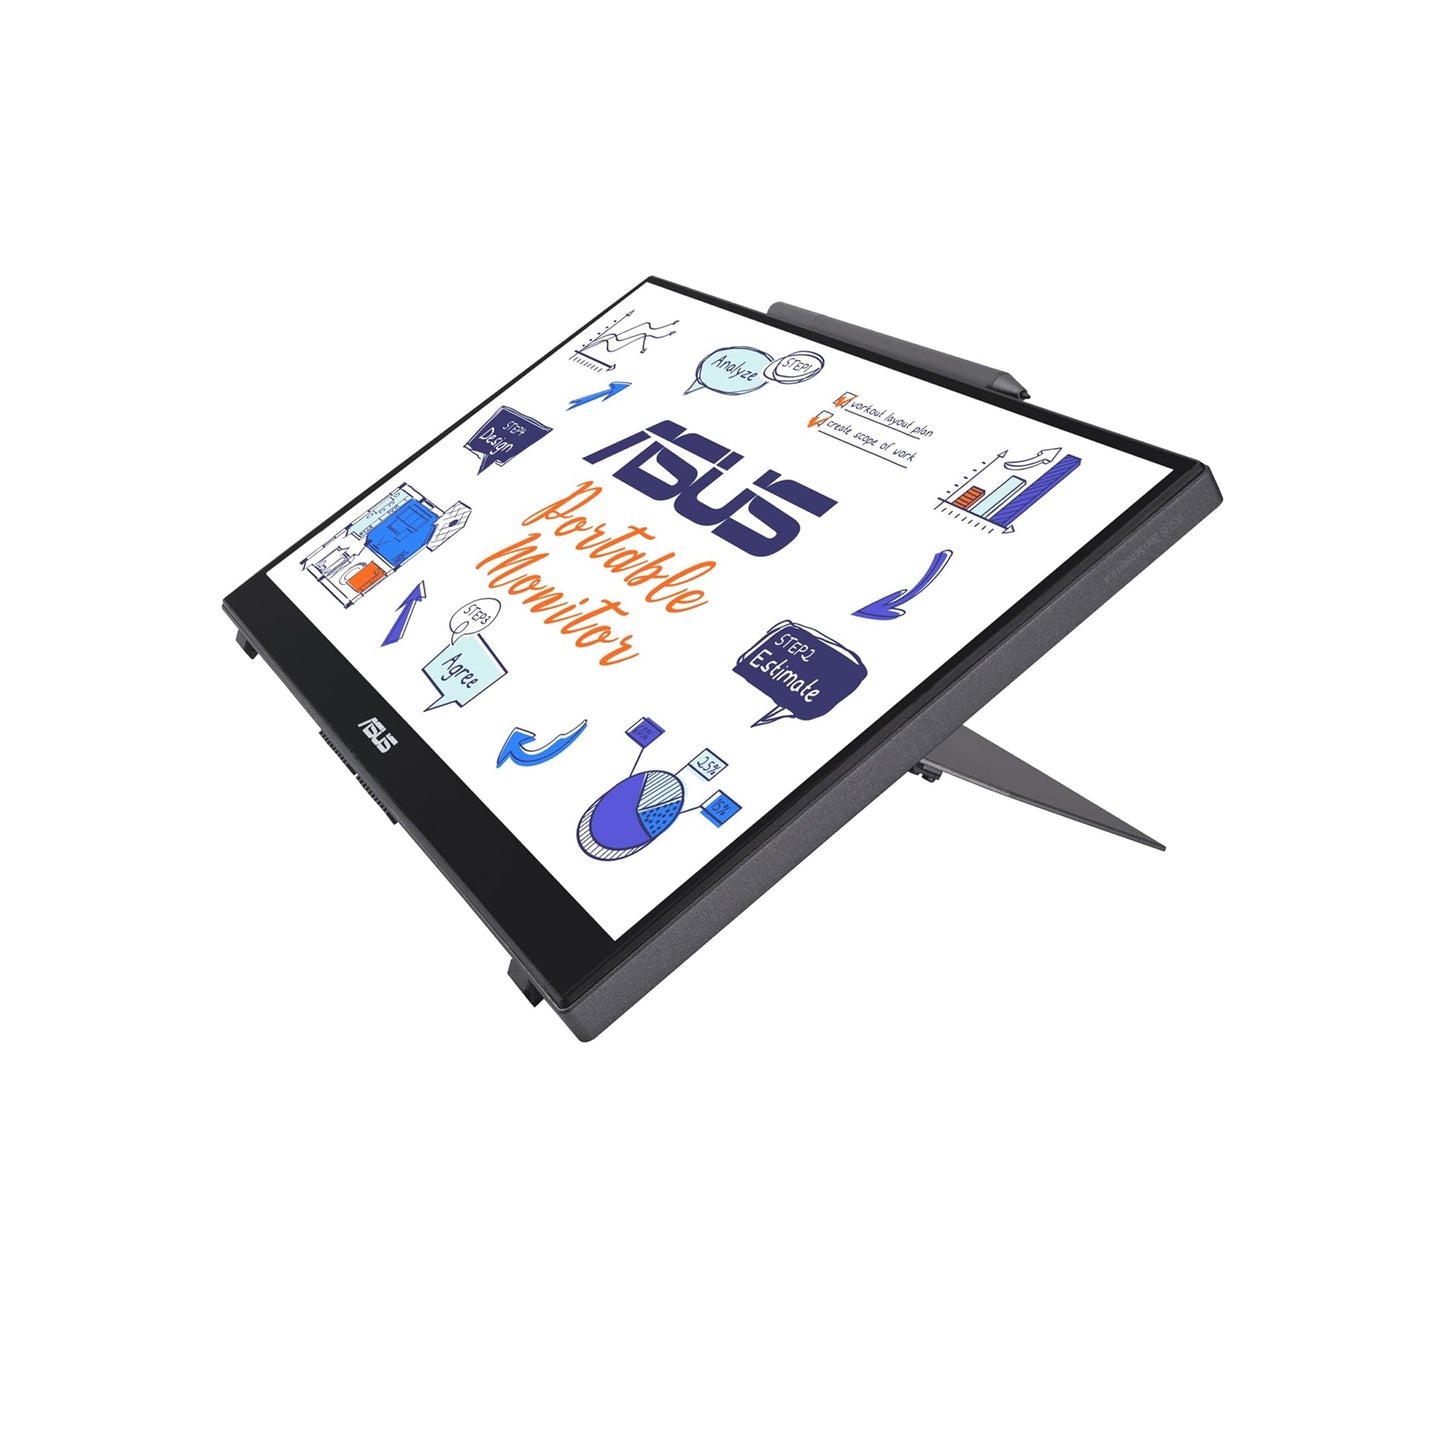 شاشة ASUS ZenScreen Ink مقاس 14 بوصة بدقة 1080 بكسل تعمل باللمس (MB14AHD) - دقة عالية كاملة، IPS، لمس 10 نقاط، قلم ستايلس (MPP 2.0)، العناية بالعين، USB من النوع C، Micro HDMI، مسند، حامل ثلاثي القوائم قابل للتركيب 